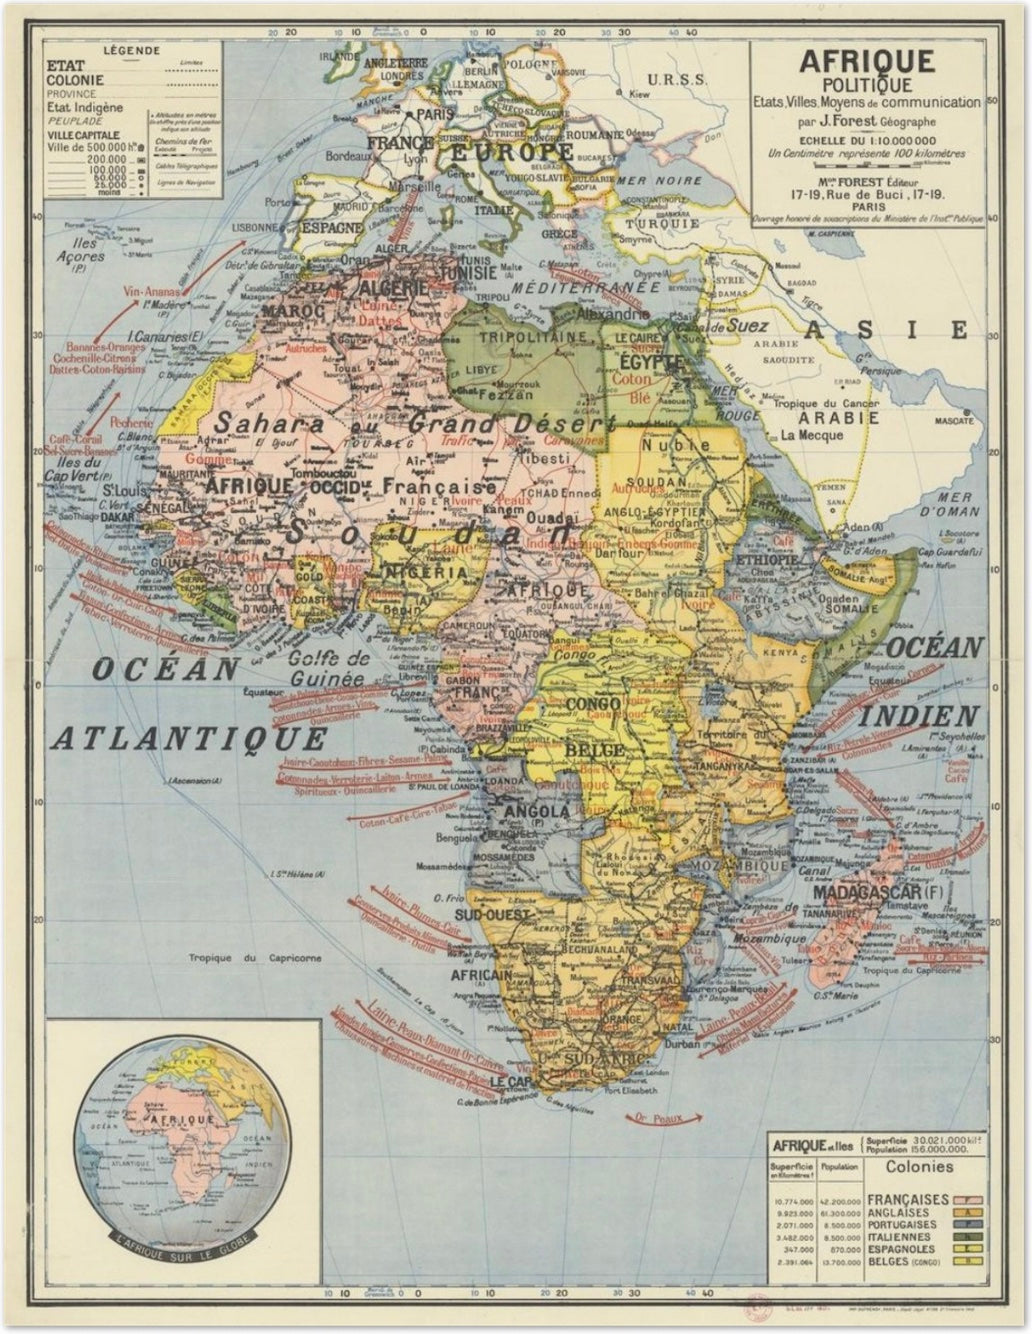 FRENCH SCHOOL MAP - AFRIQUE POLITIQUE